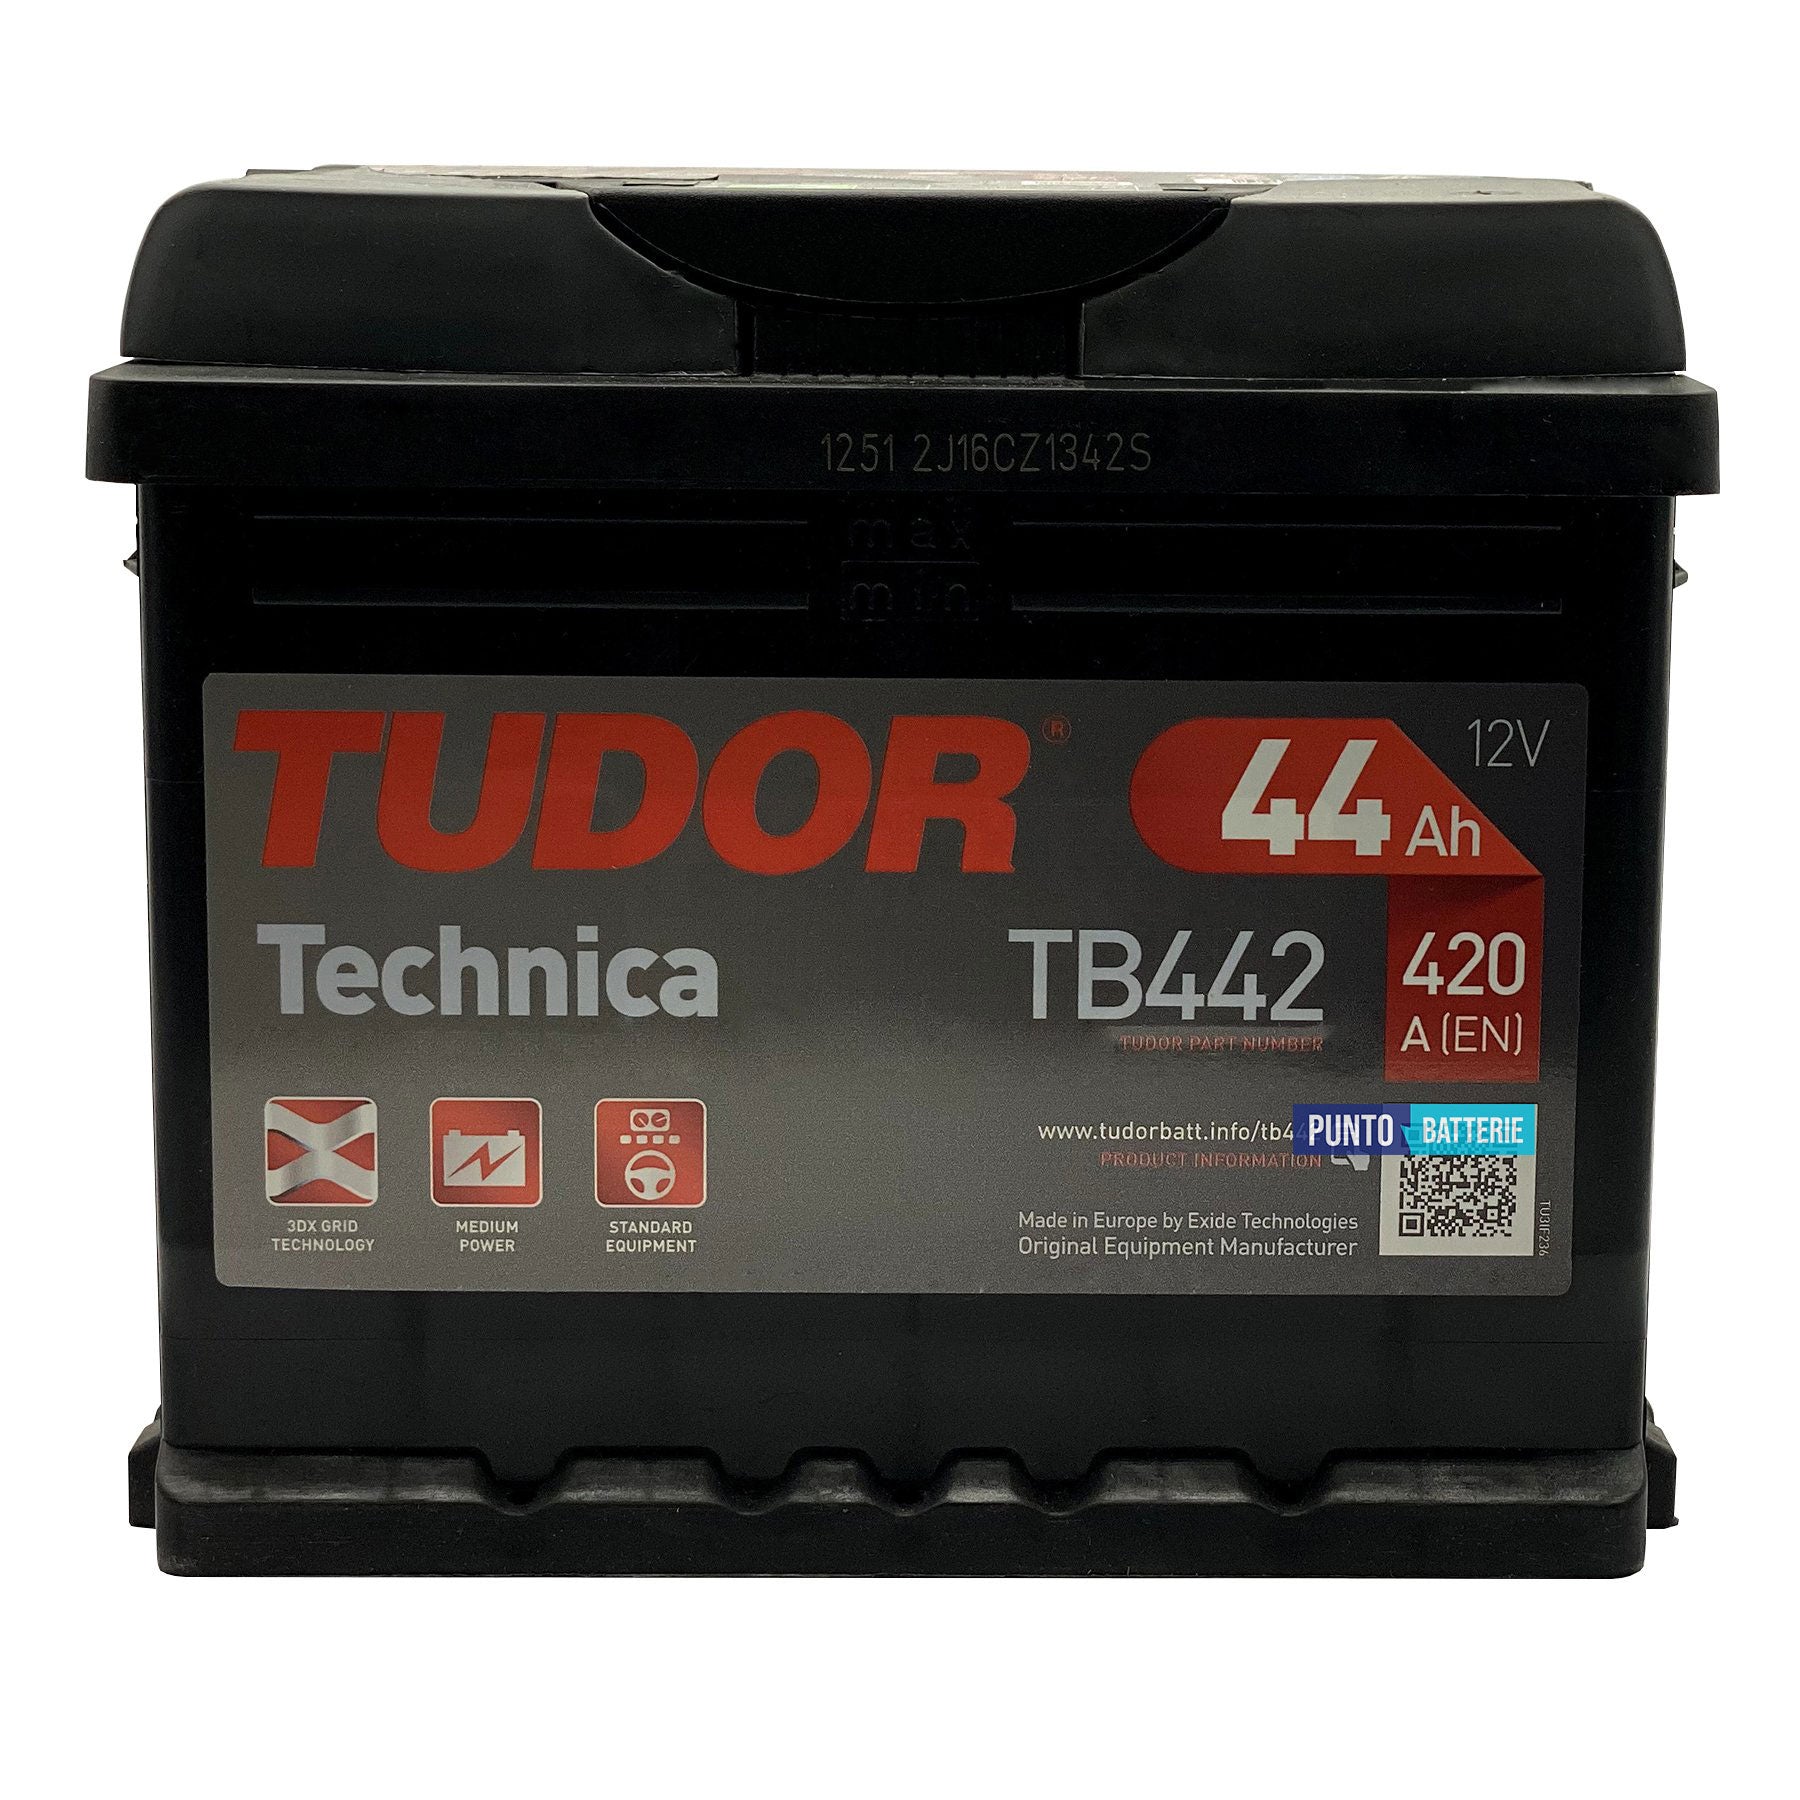 Batteria Tudor 44Ah, 12V, 420A, 207x175x175mm